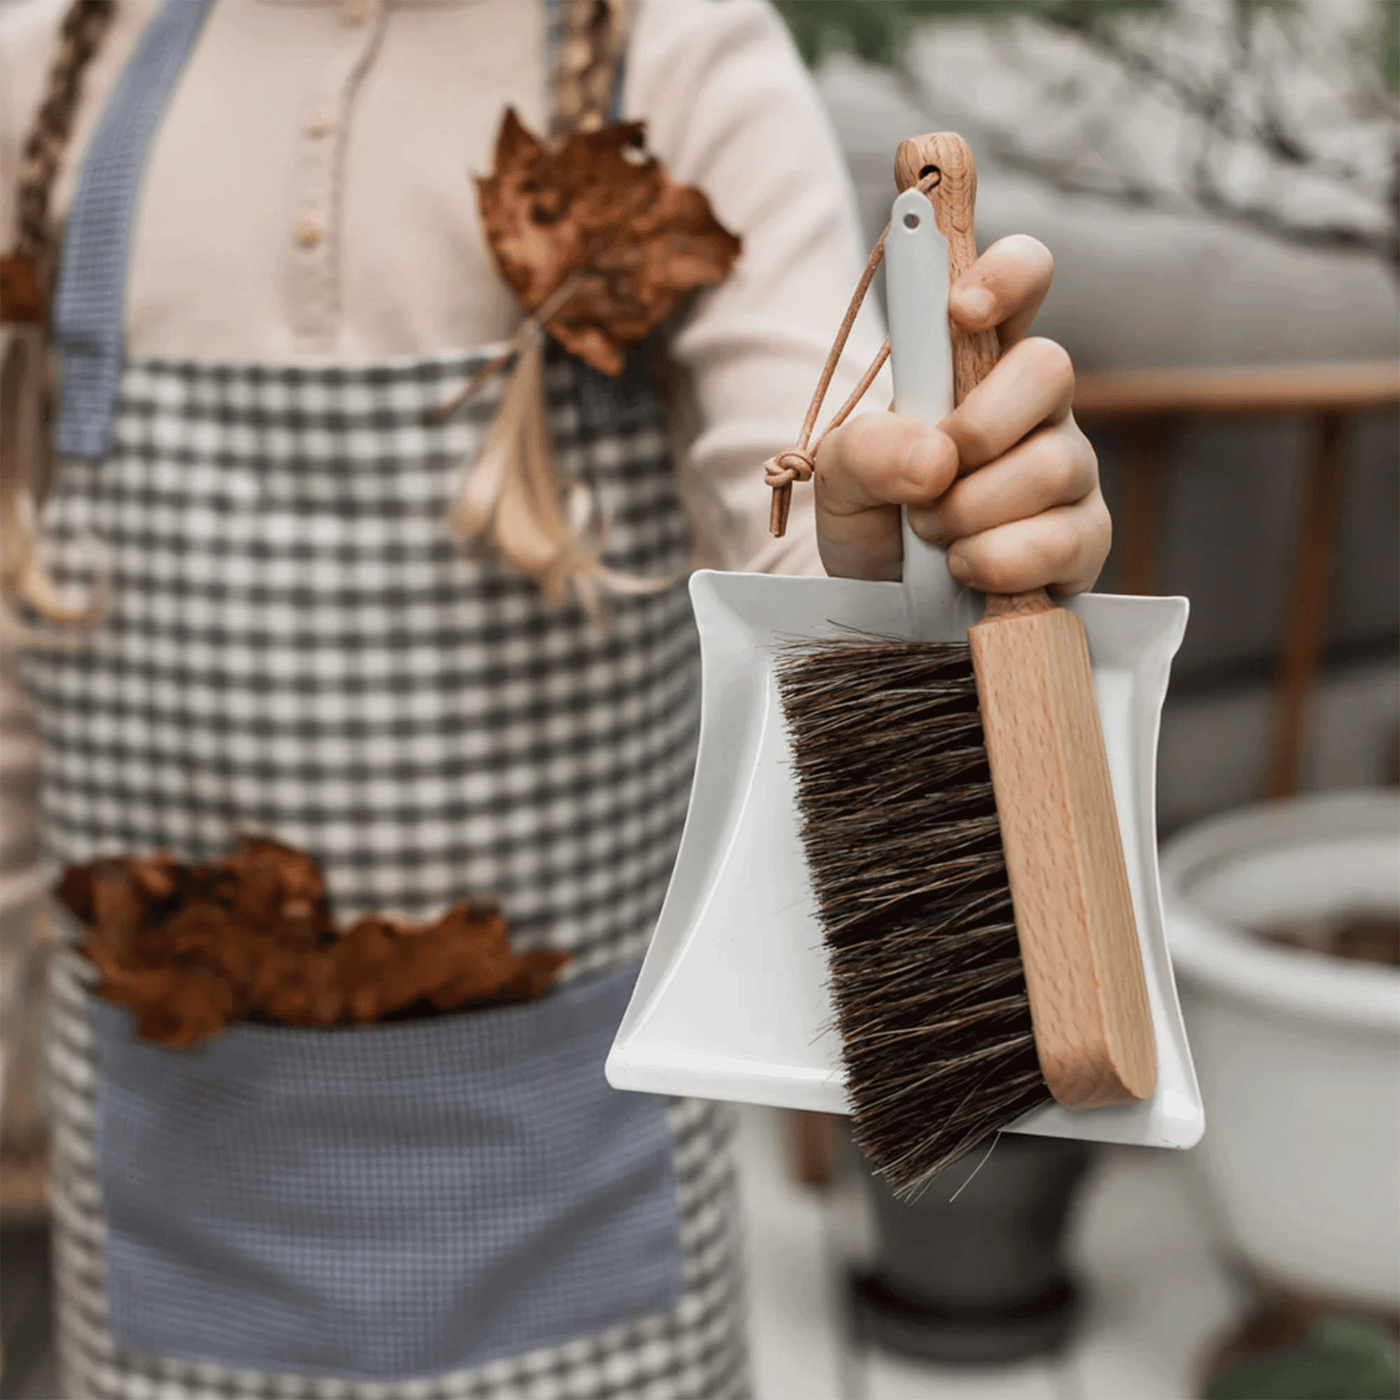 Bürstenhaus Redecker | Children's Dustpan and Broom